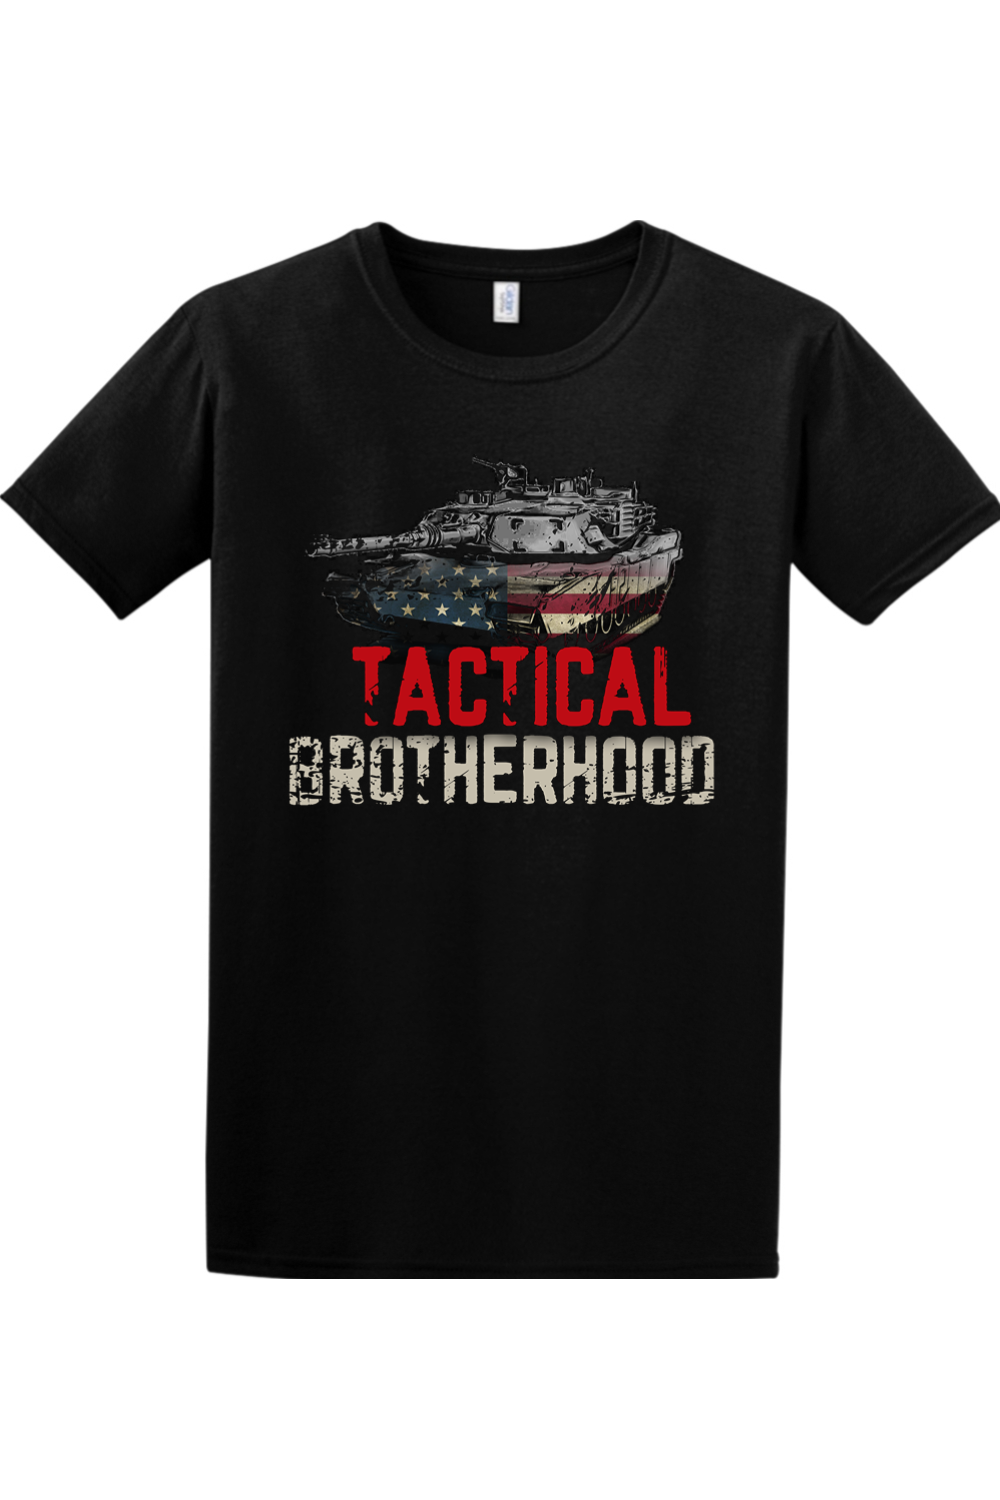 M1 Abrams - Tactical Brotherhood